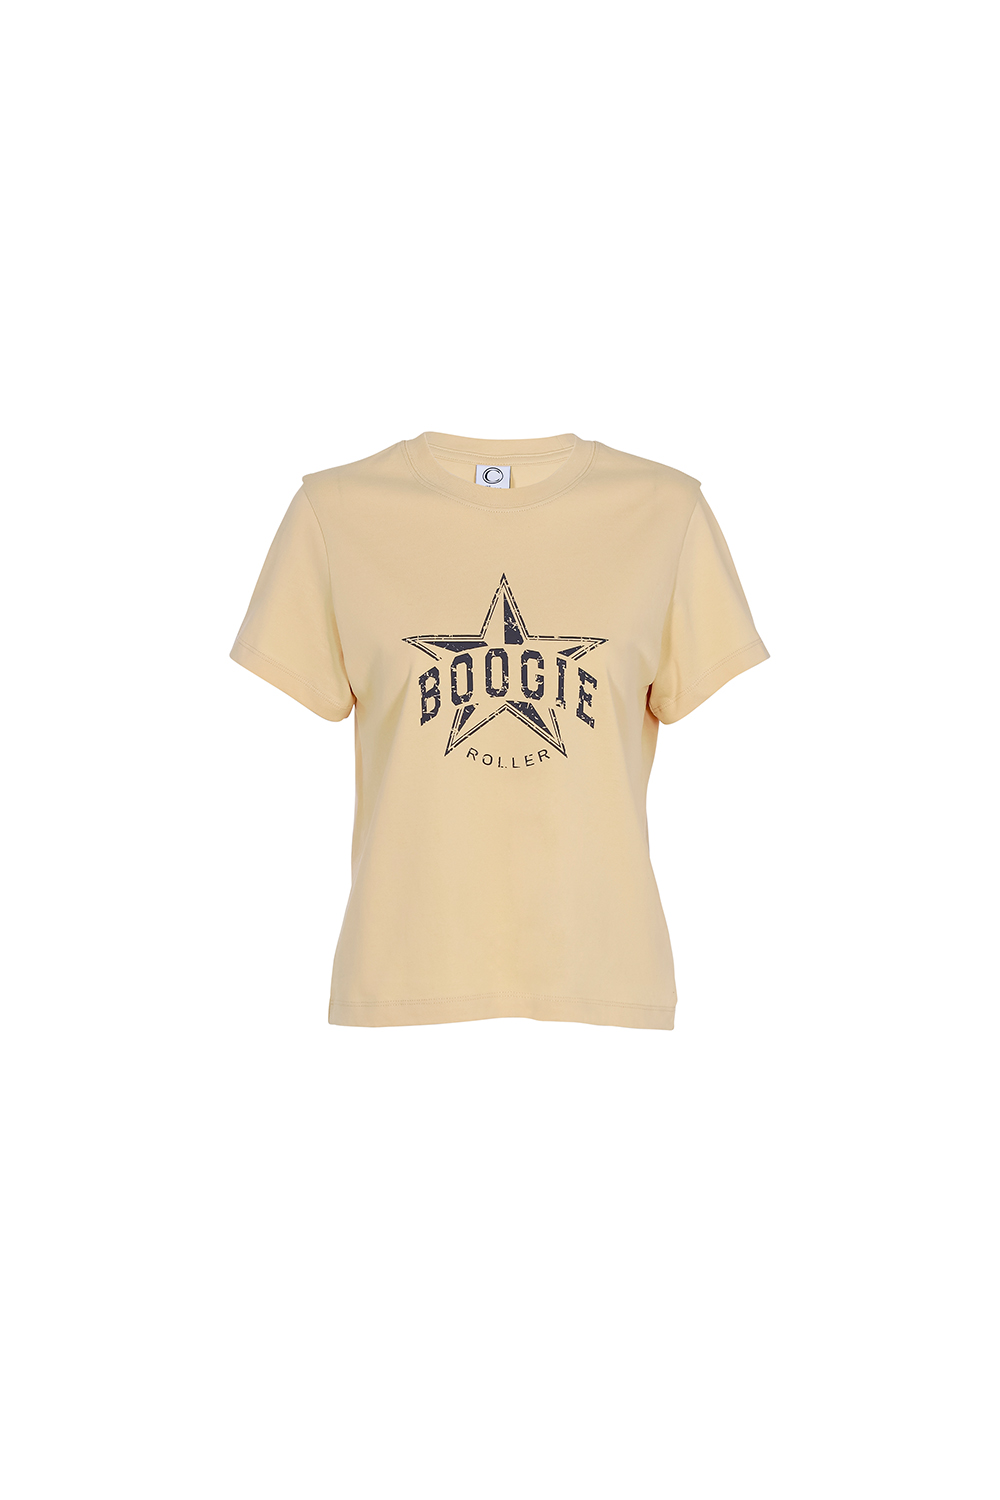 Boogie T-shirt_beige